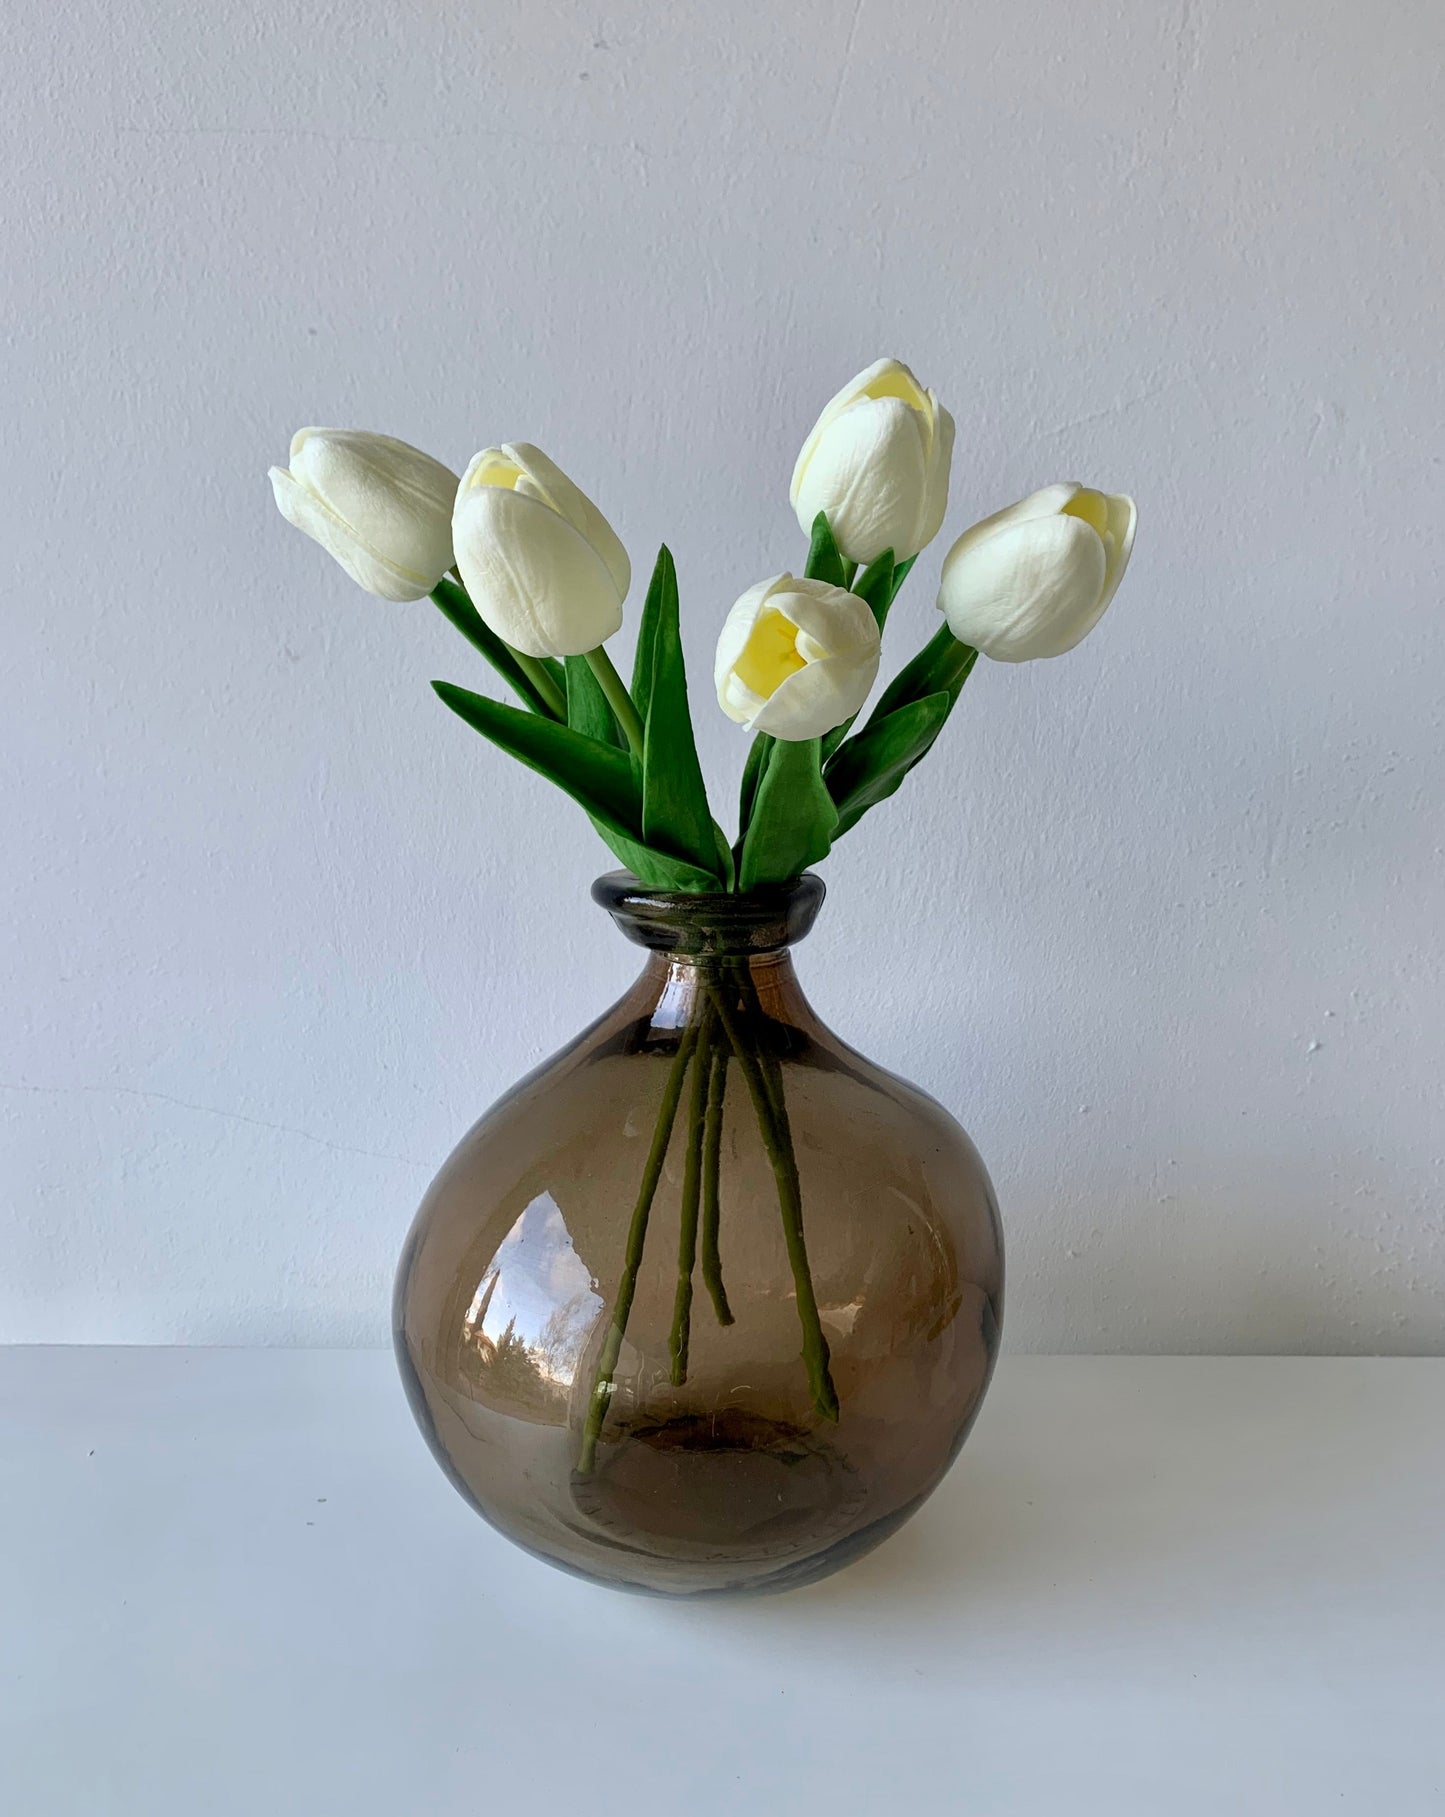 Fehér tulipán művirág csokor